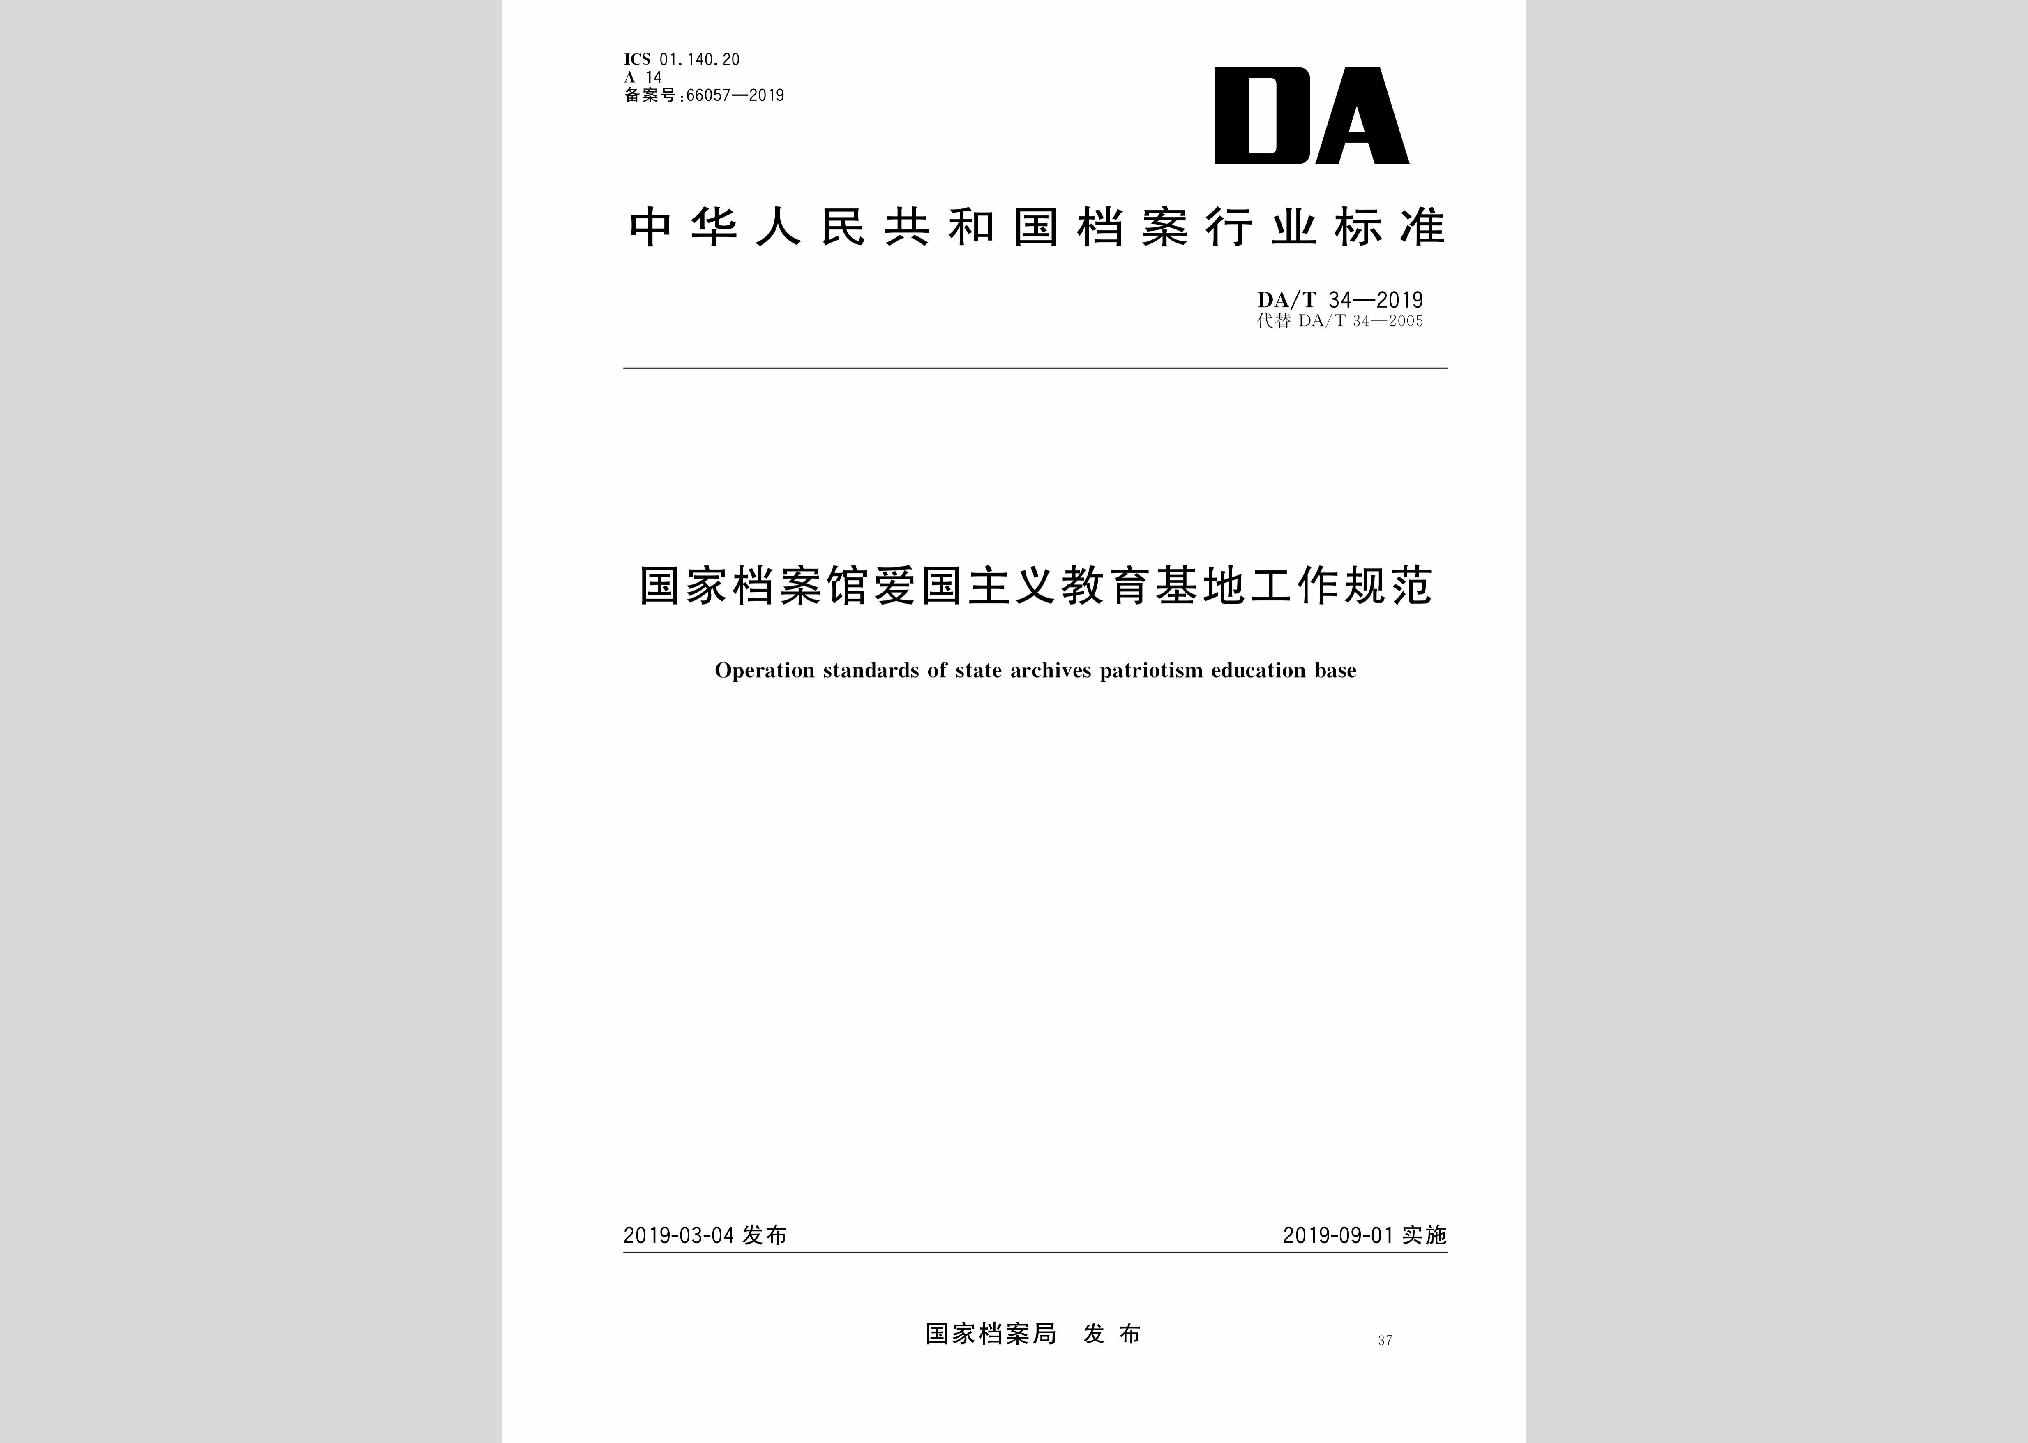 DA/T34-2019：国家档案馆爱国主义教育基地工作规范